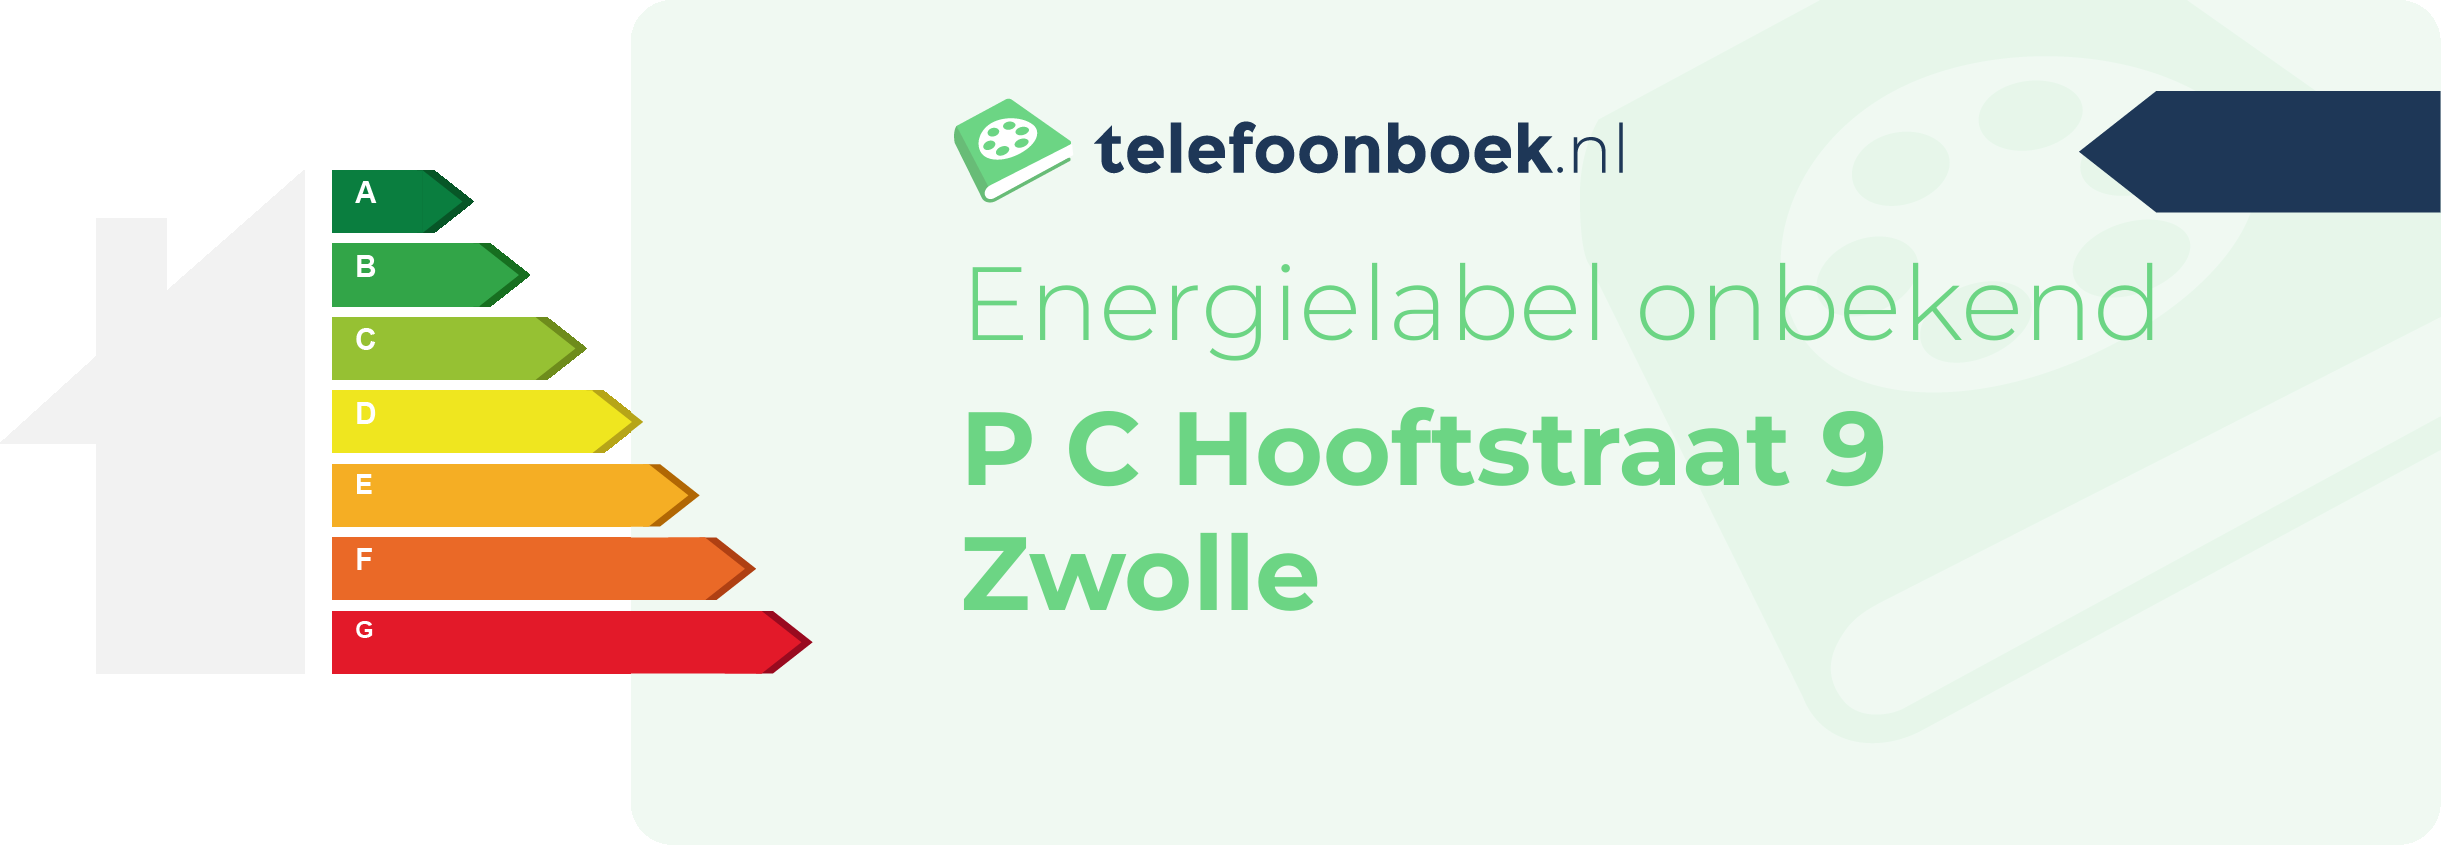 Energielabel P C Hooftstraat 9 Zwolle